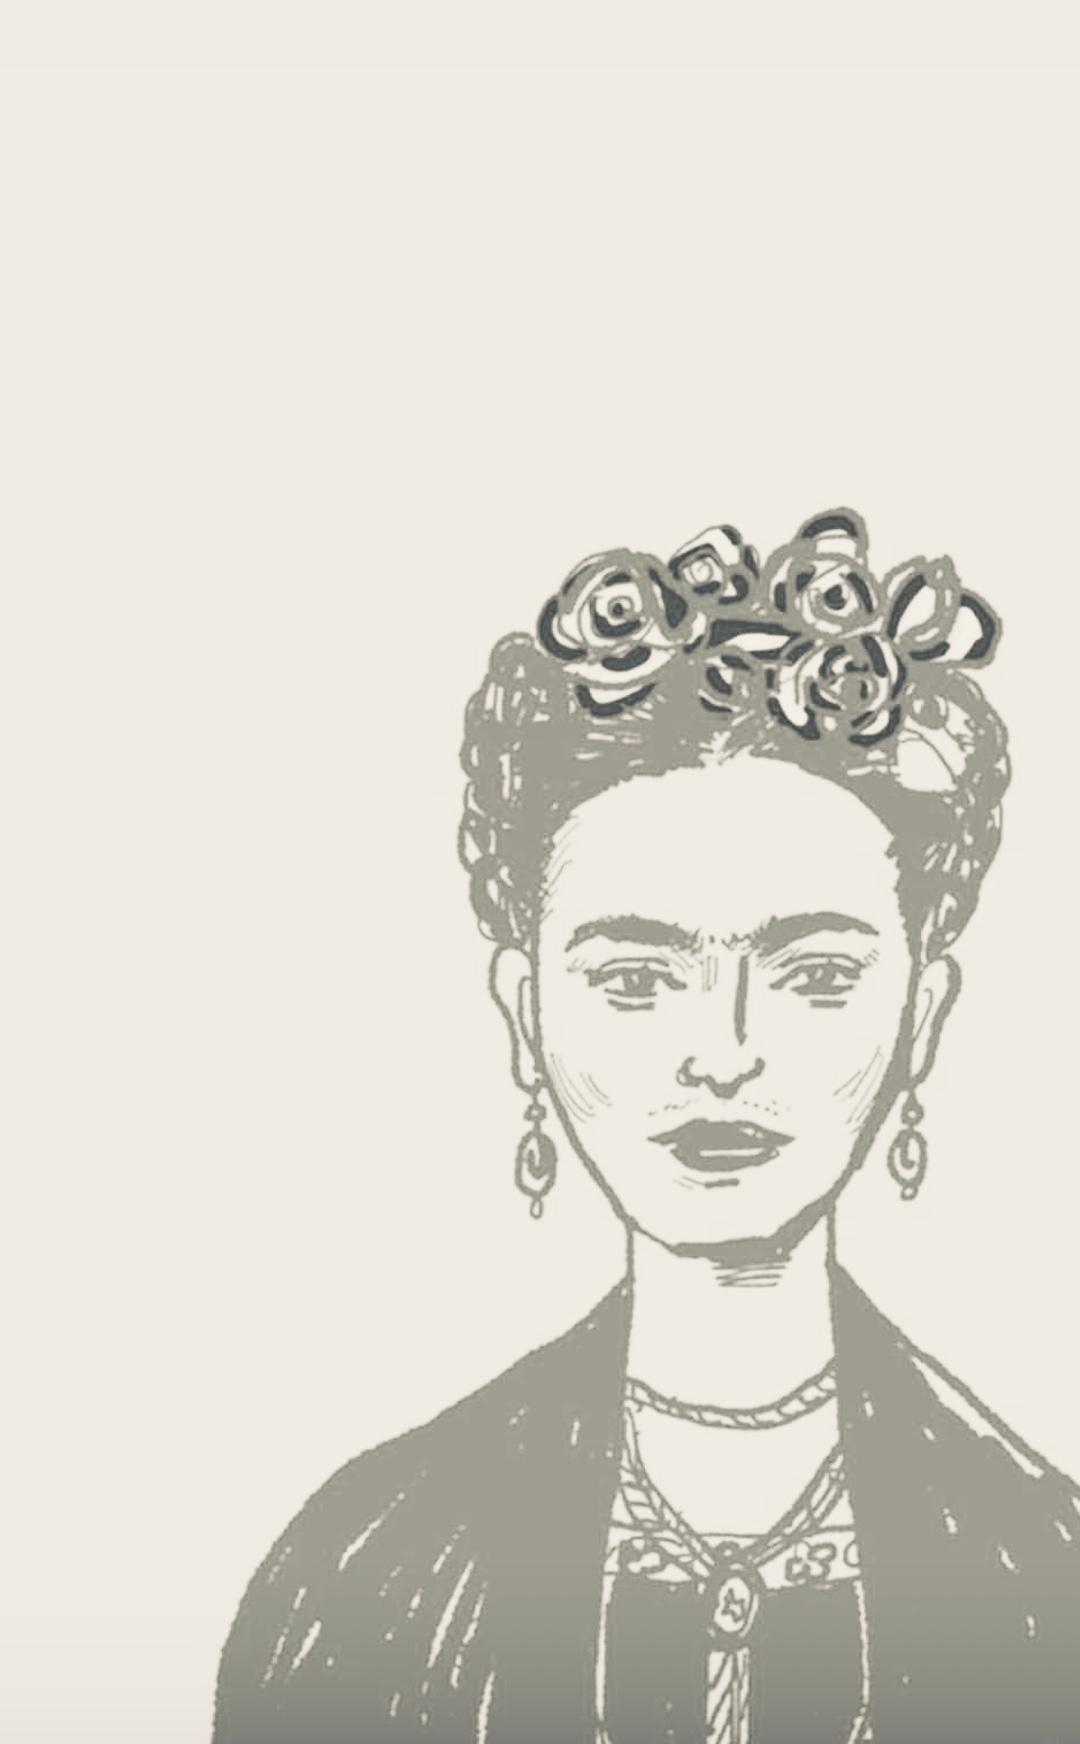 #teint#beautychallenge
Frida hatte einen schönen natürlichen Teint. 